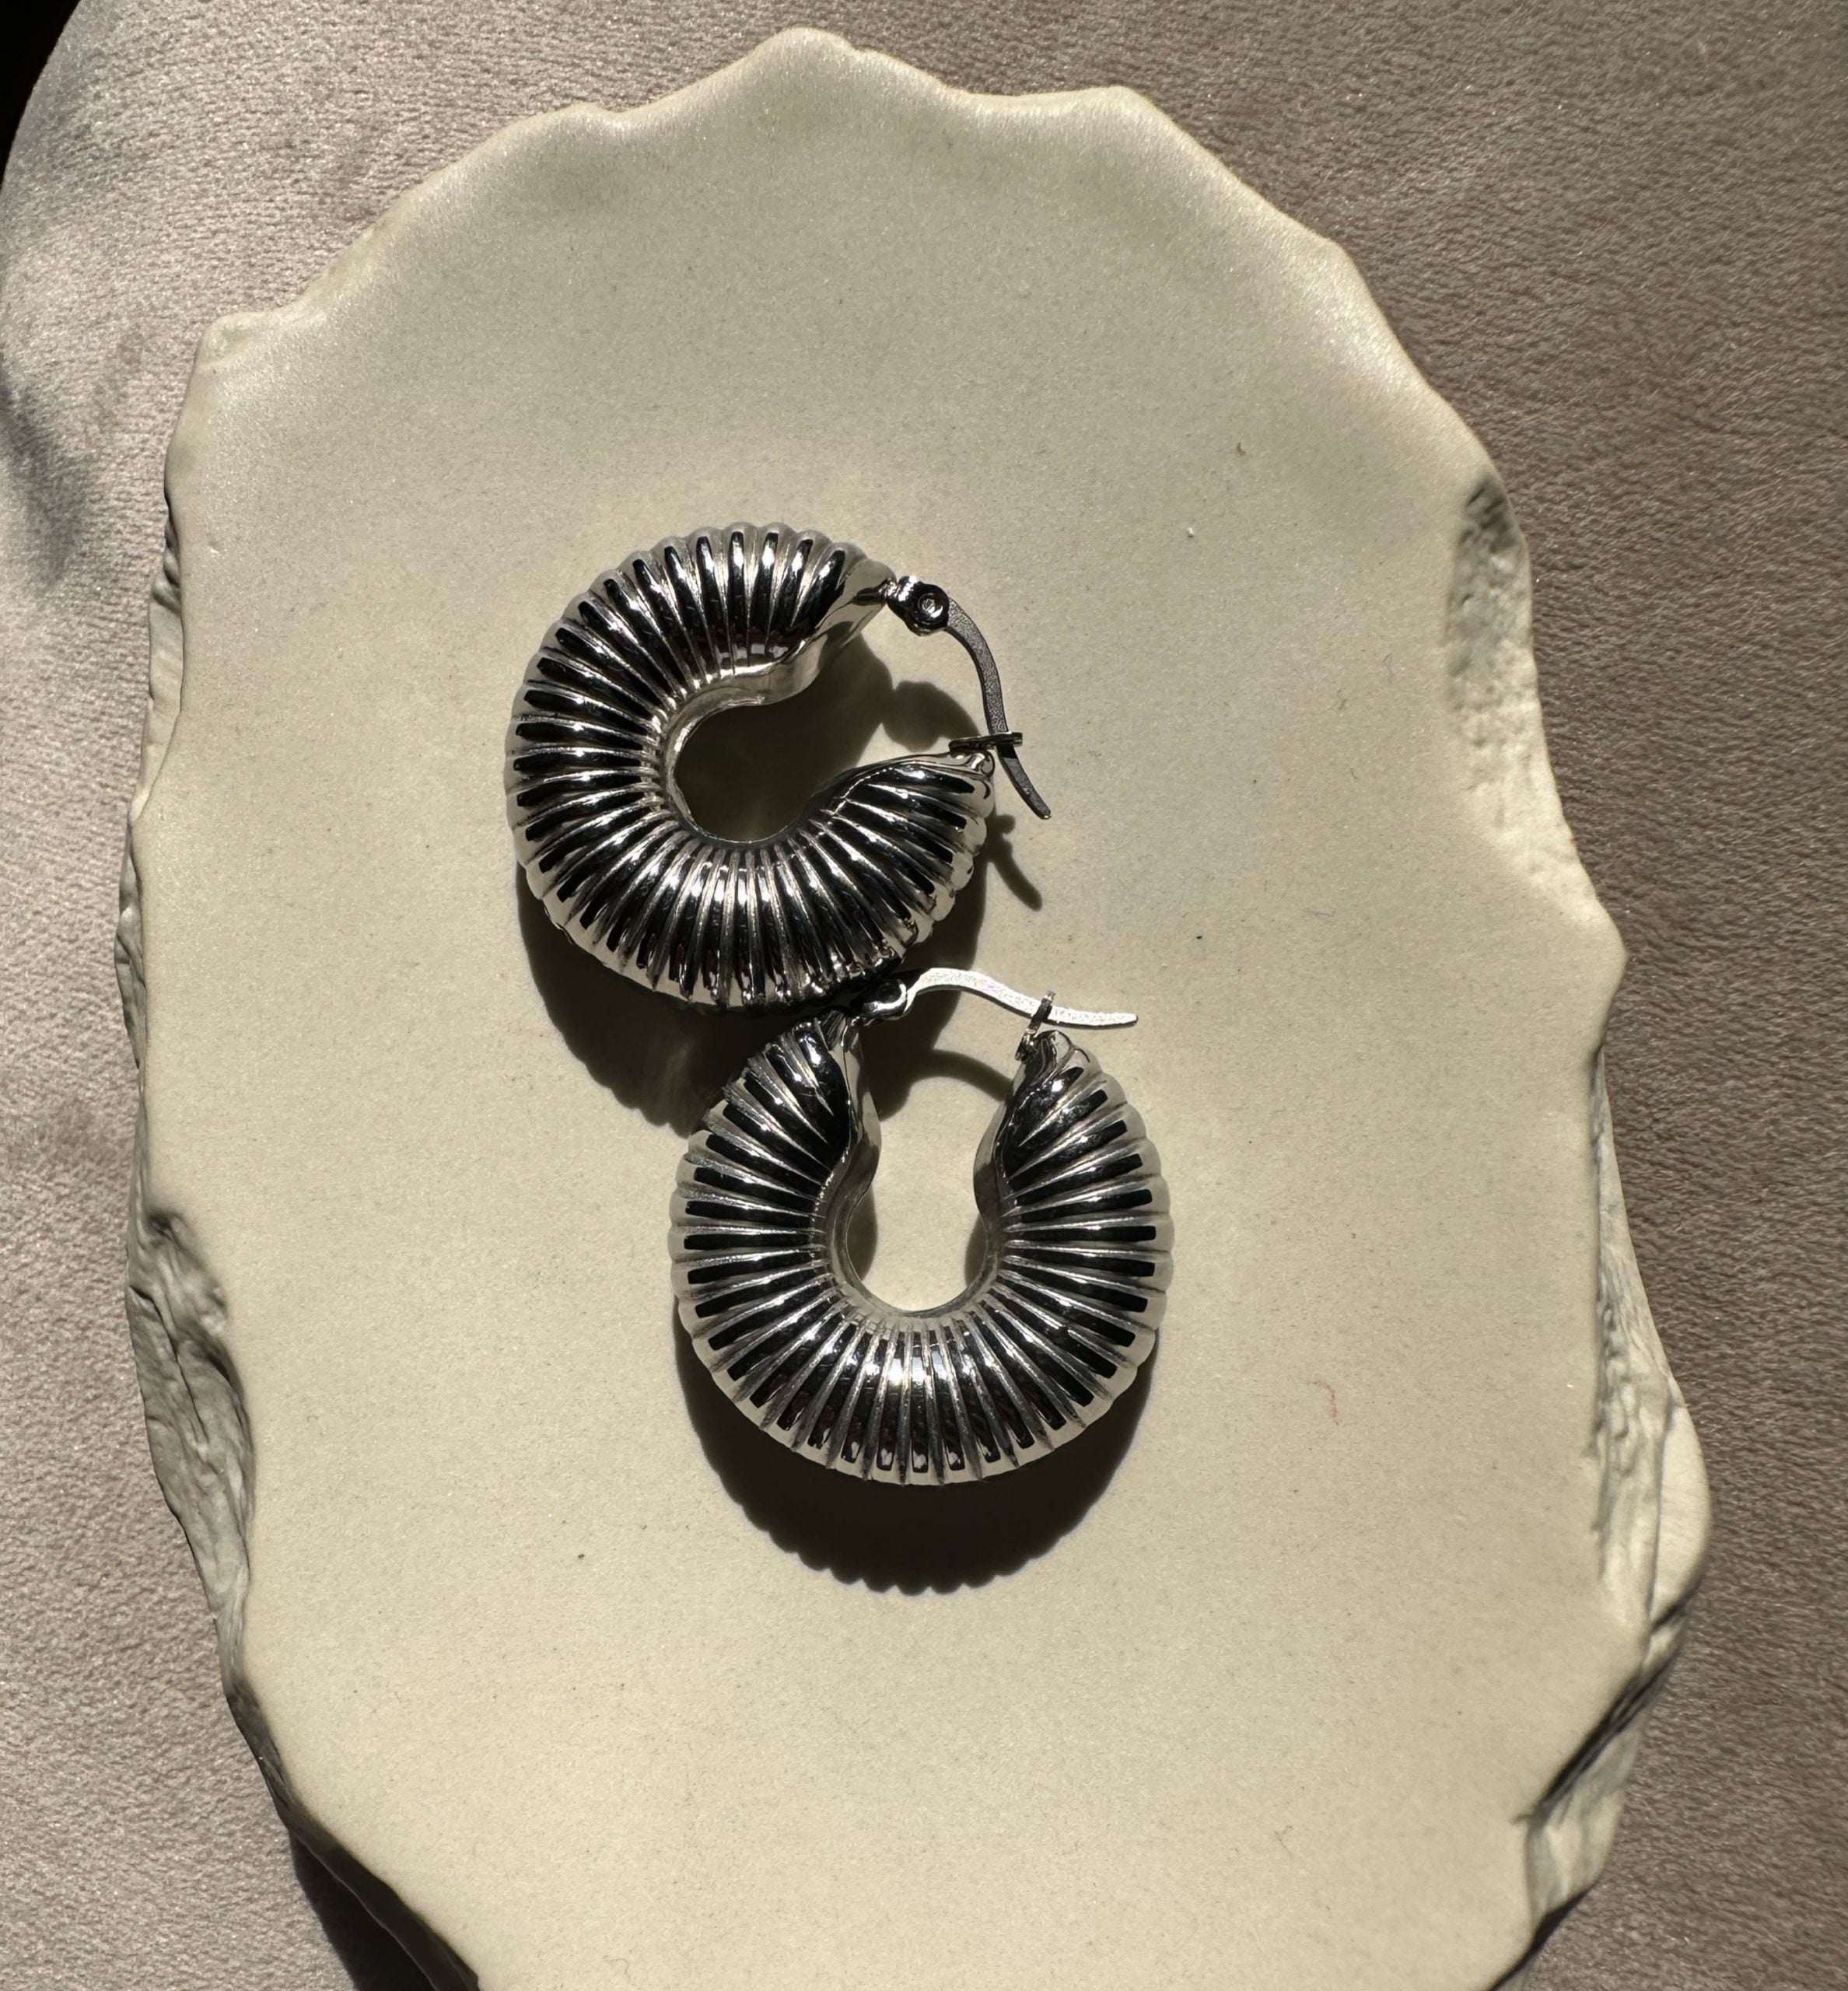 Troy earrings in silver